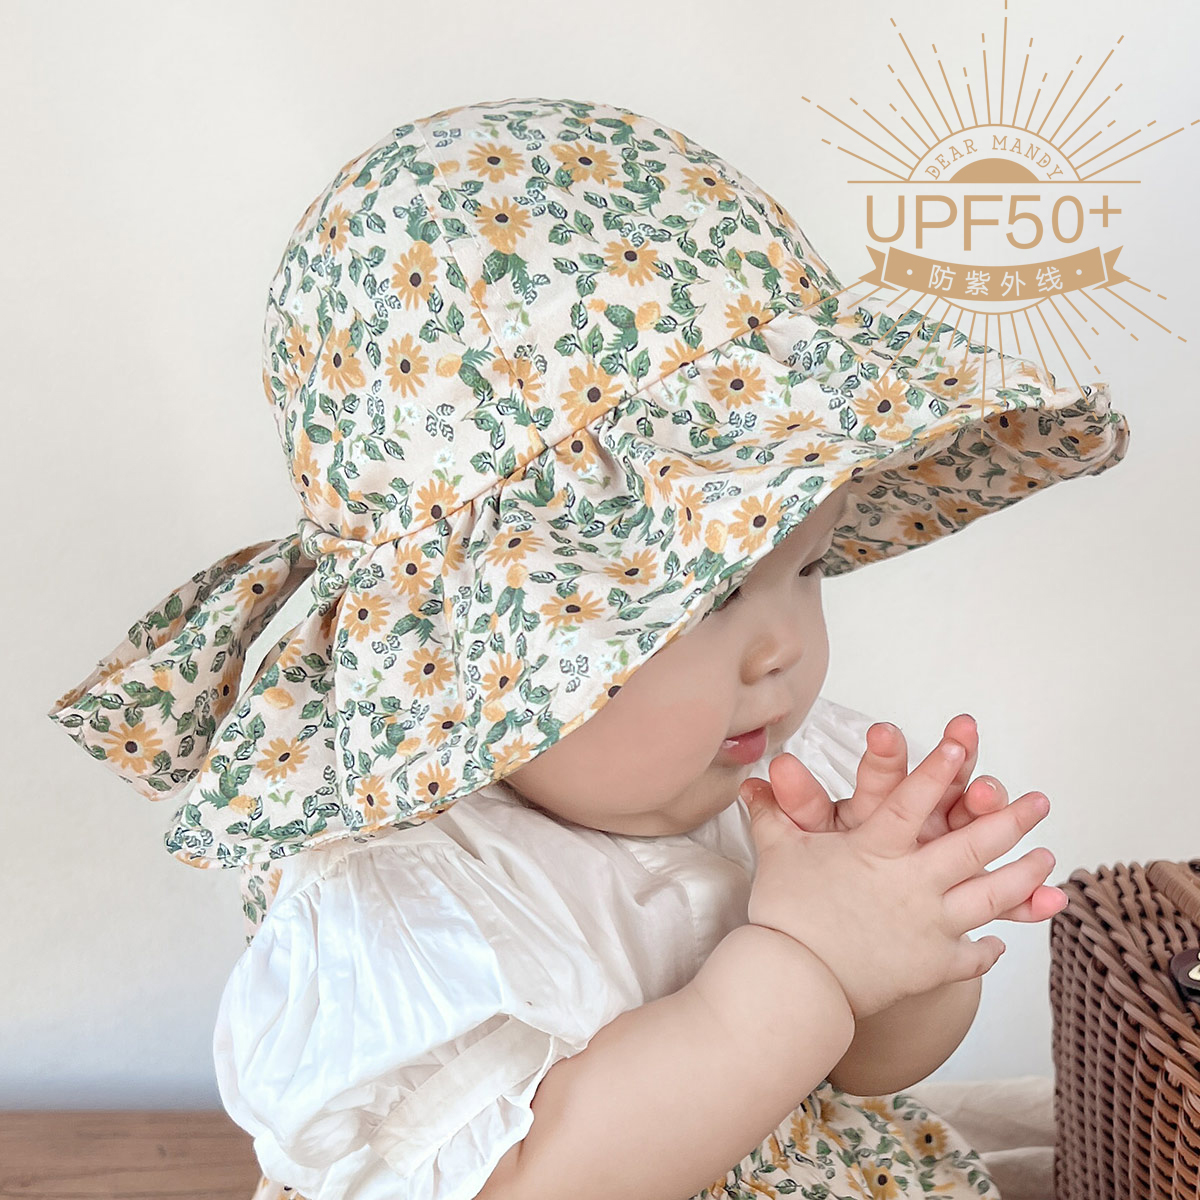 婴儿遮阳帽春秋大檐纯棉薄款防晒防紫外线出游儿童宝宝太阳帽夏季